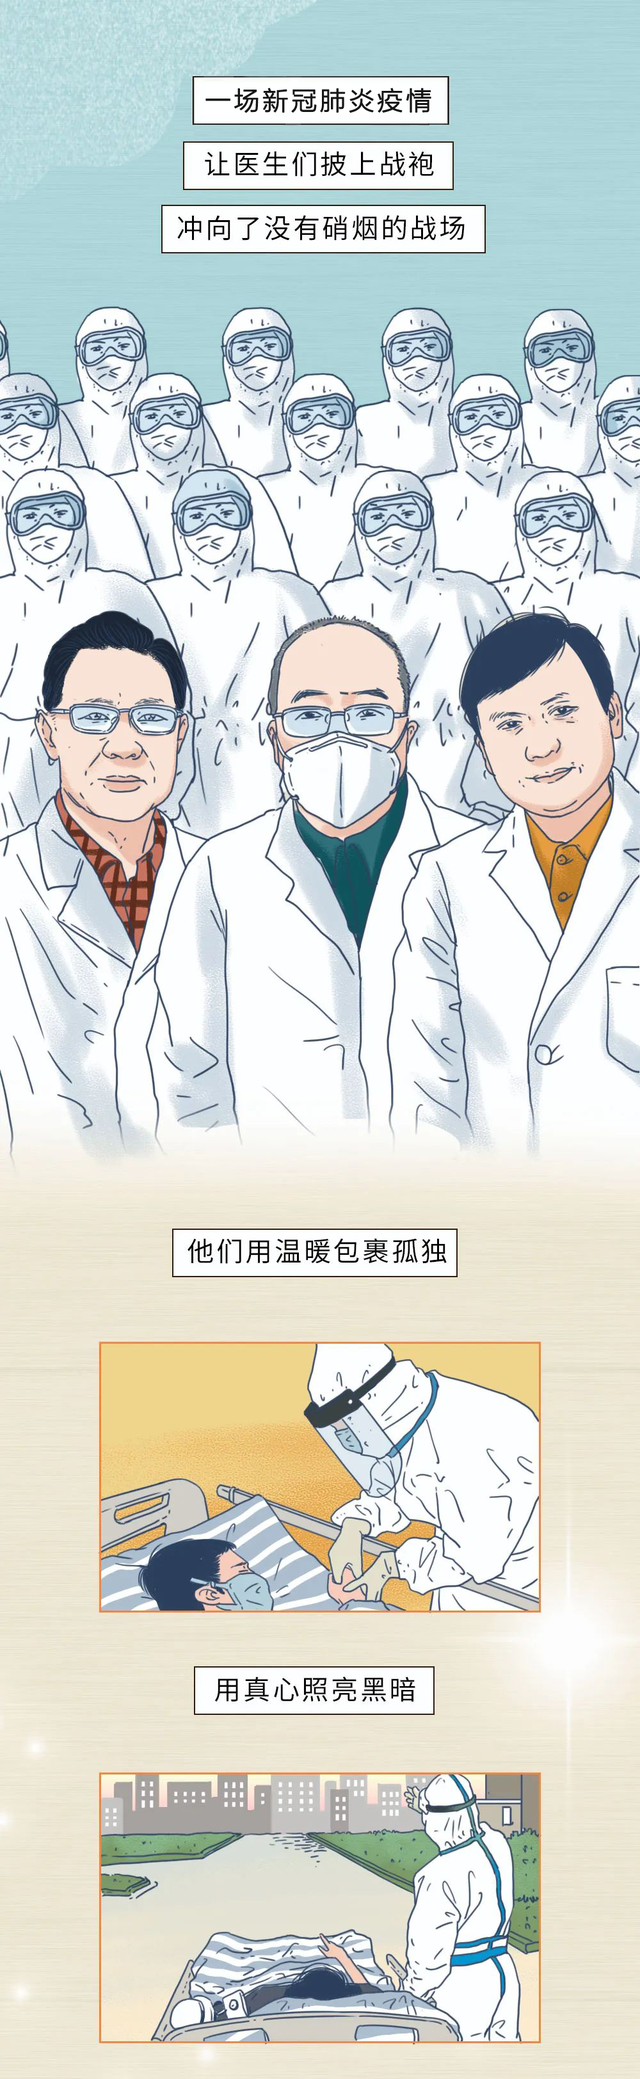 中国医师节1